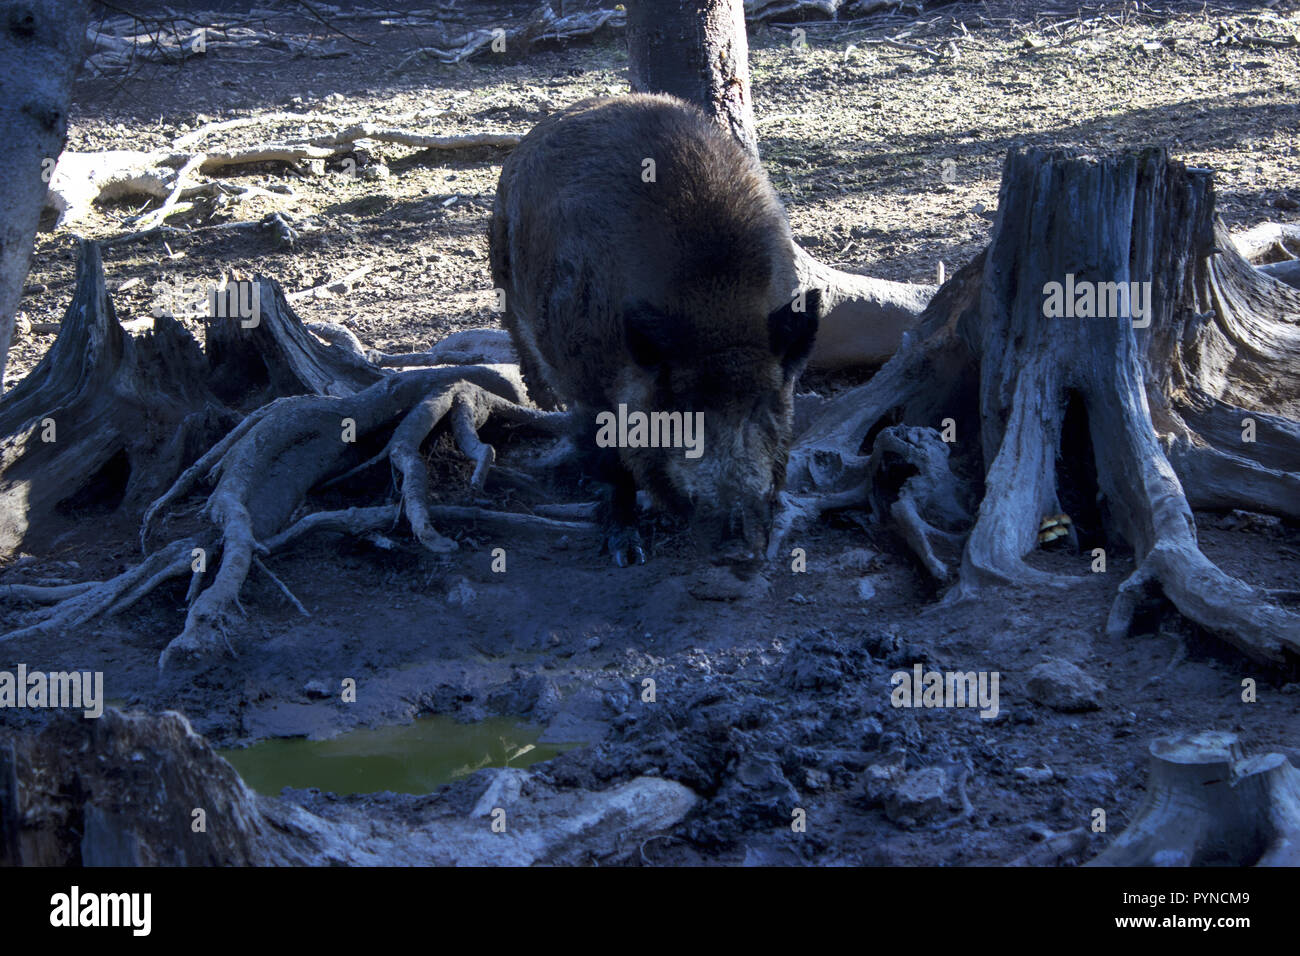 Die Wildschweine wurzeln im Boden im Wald Stockfoto